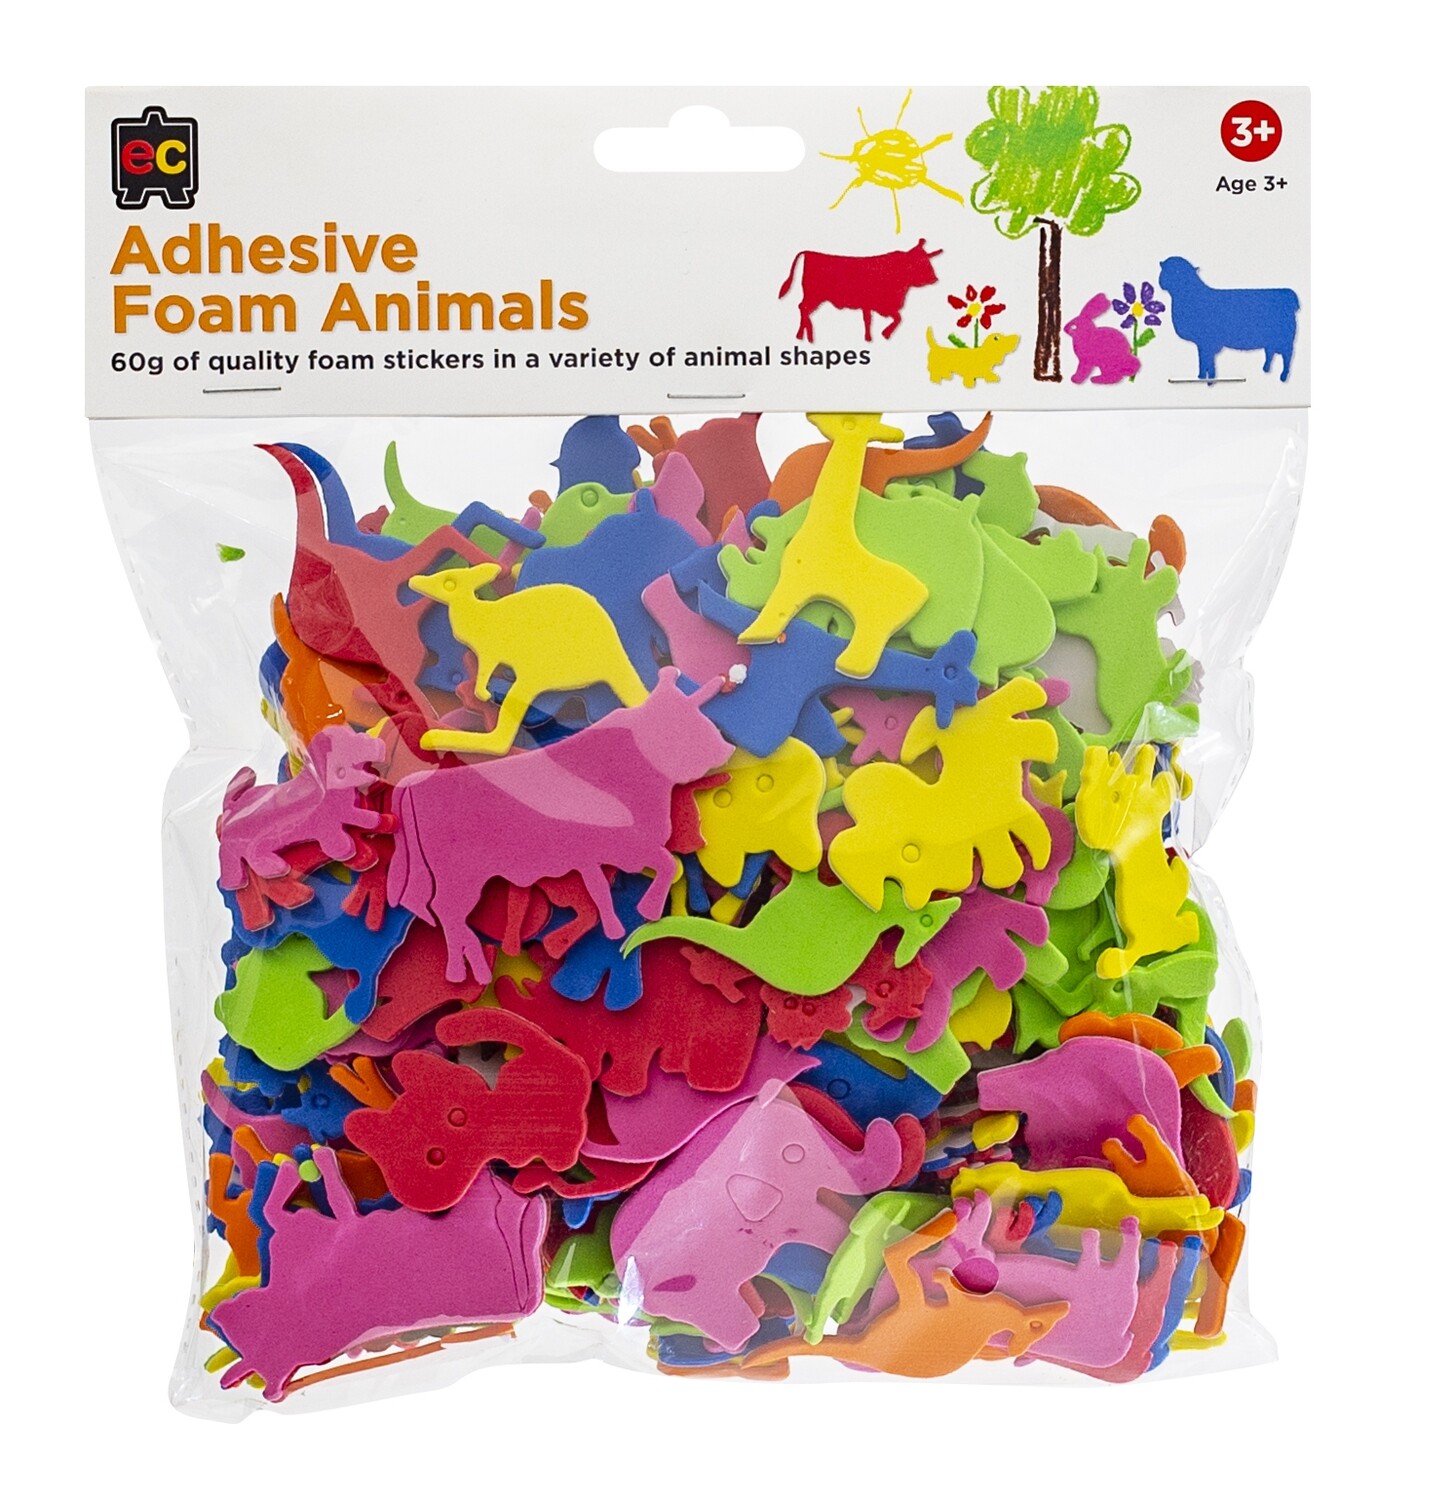 Adhesive Foam Animals 60g